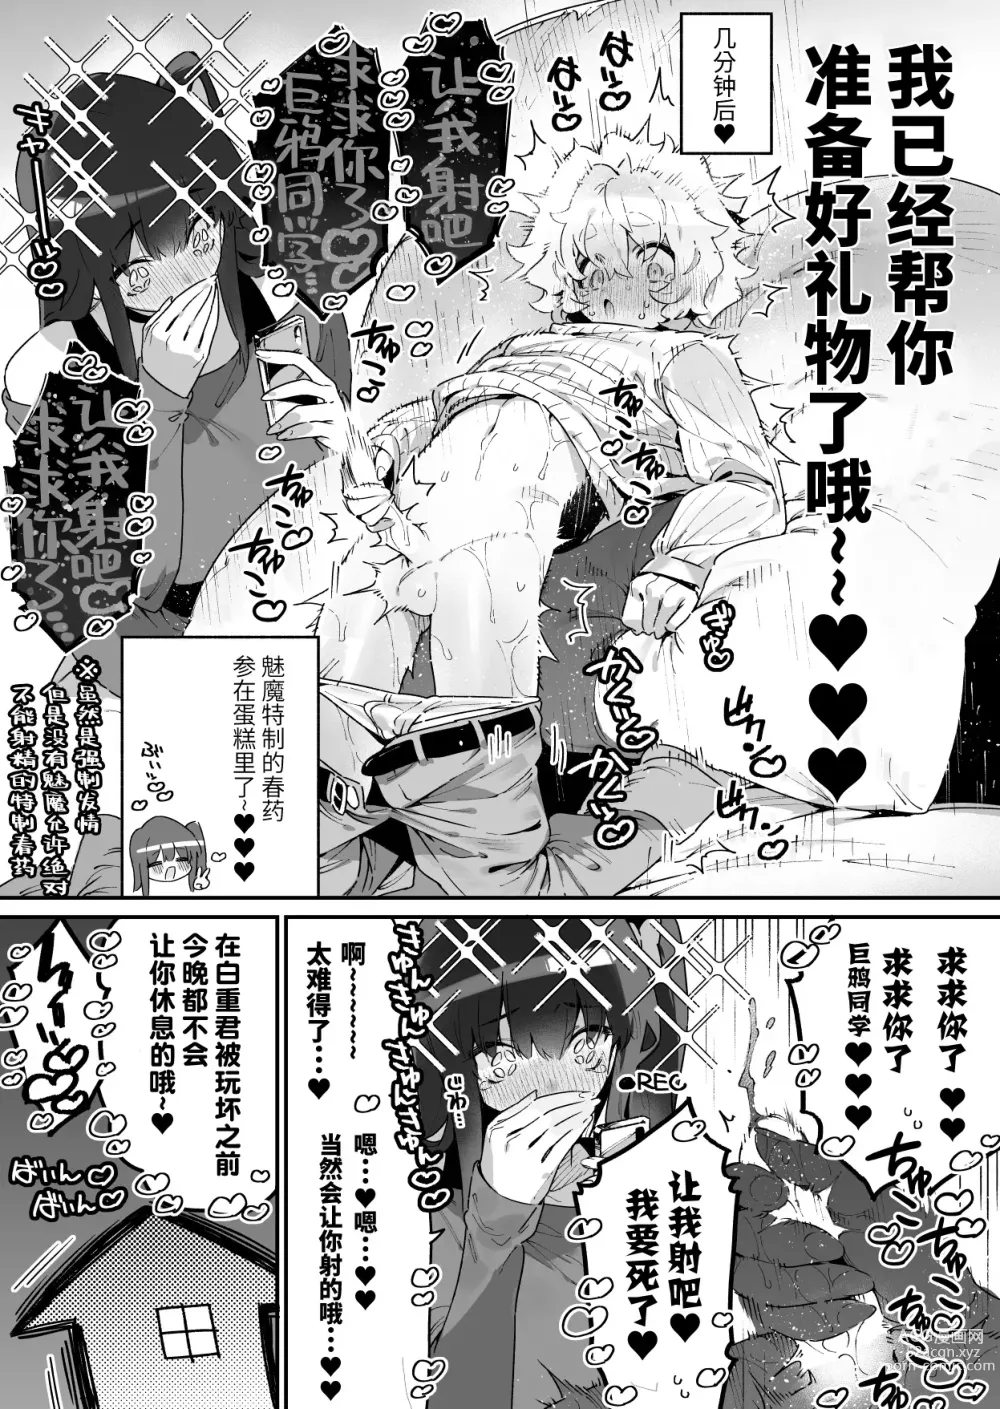 Page 35 of doujinshi FANBOX 合集